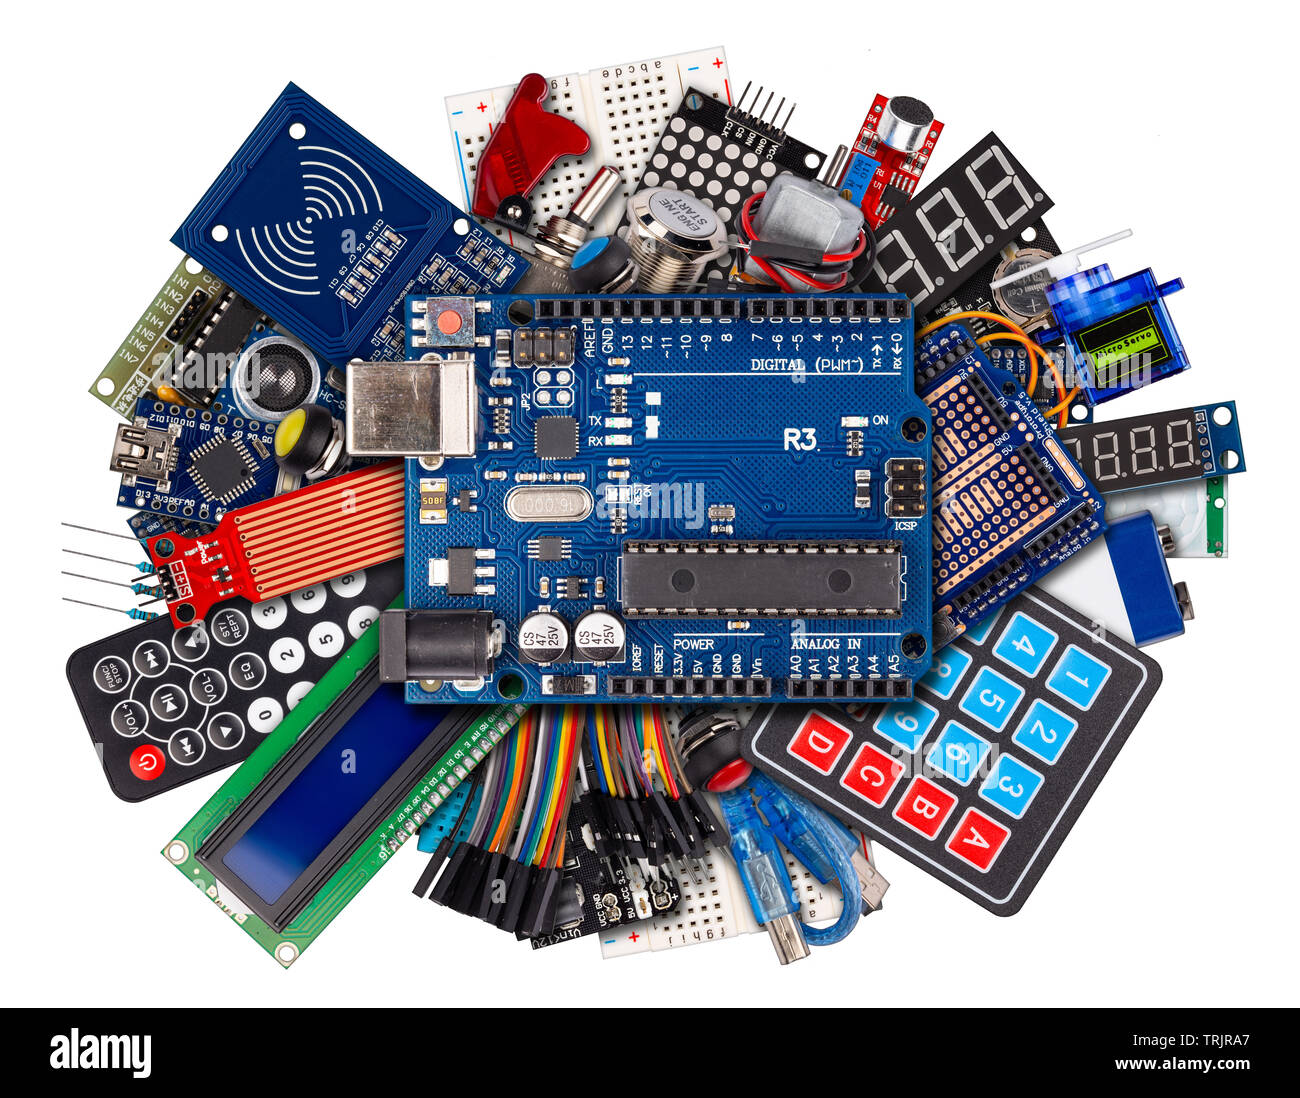 Collage von Mikrocontroller Board Anzeige sensor Schalter Kabel Zubehör und Ausrüstung auf Weiß elektronik Konzept Hintergrund isoliert Stockfoto